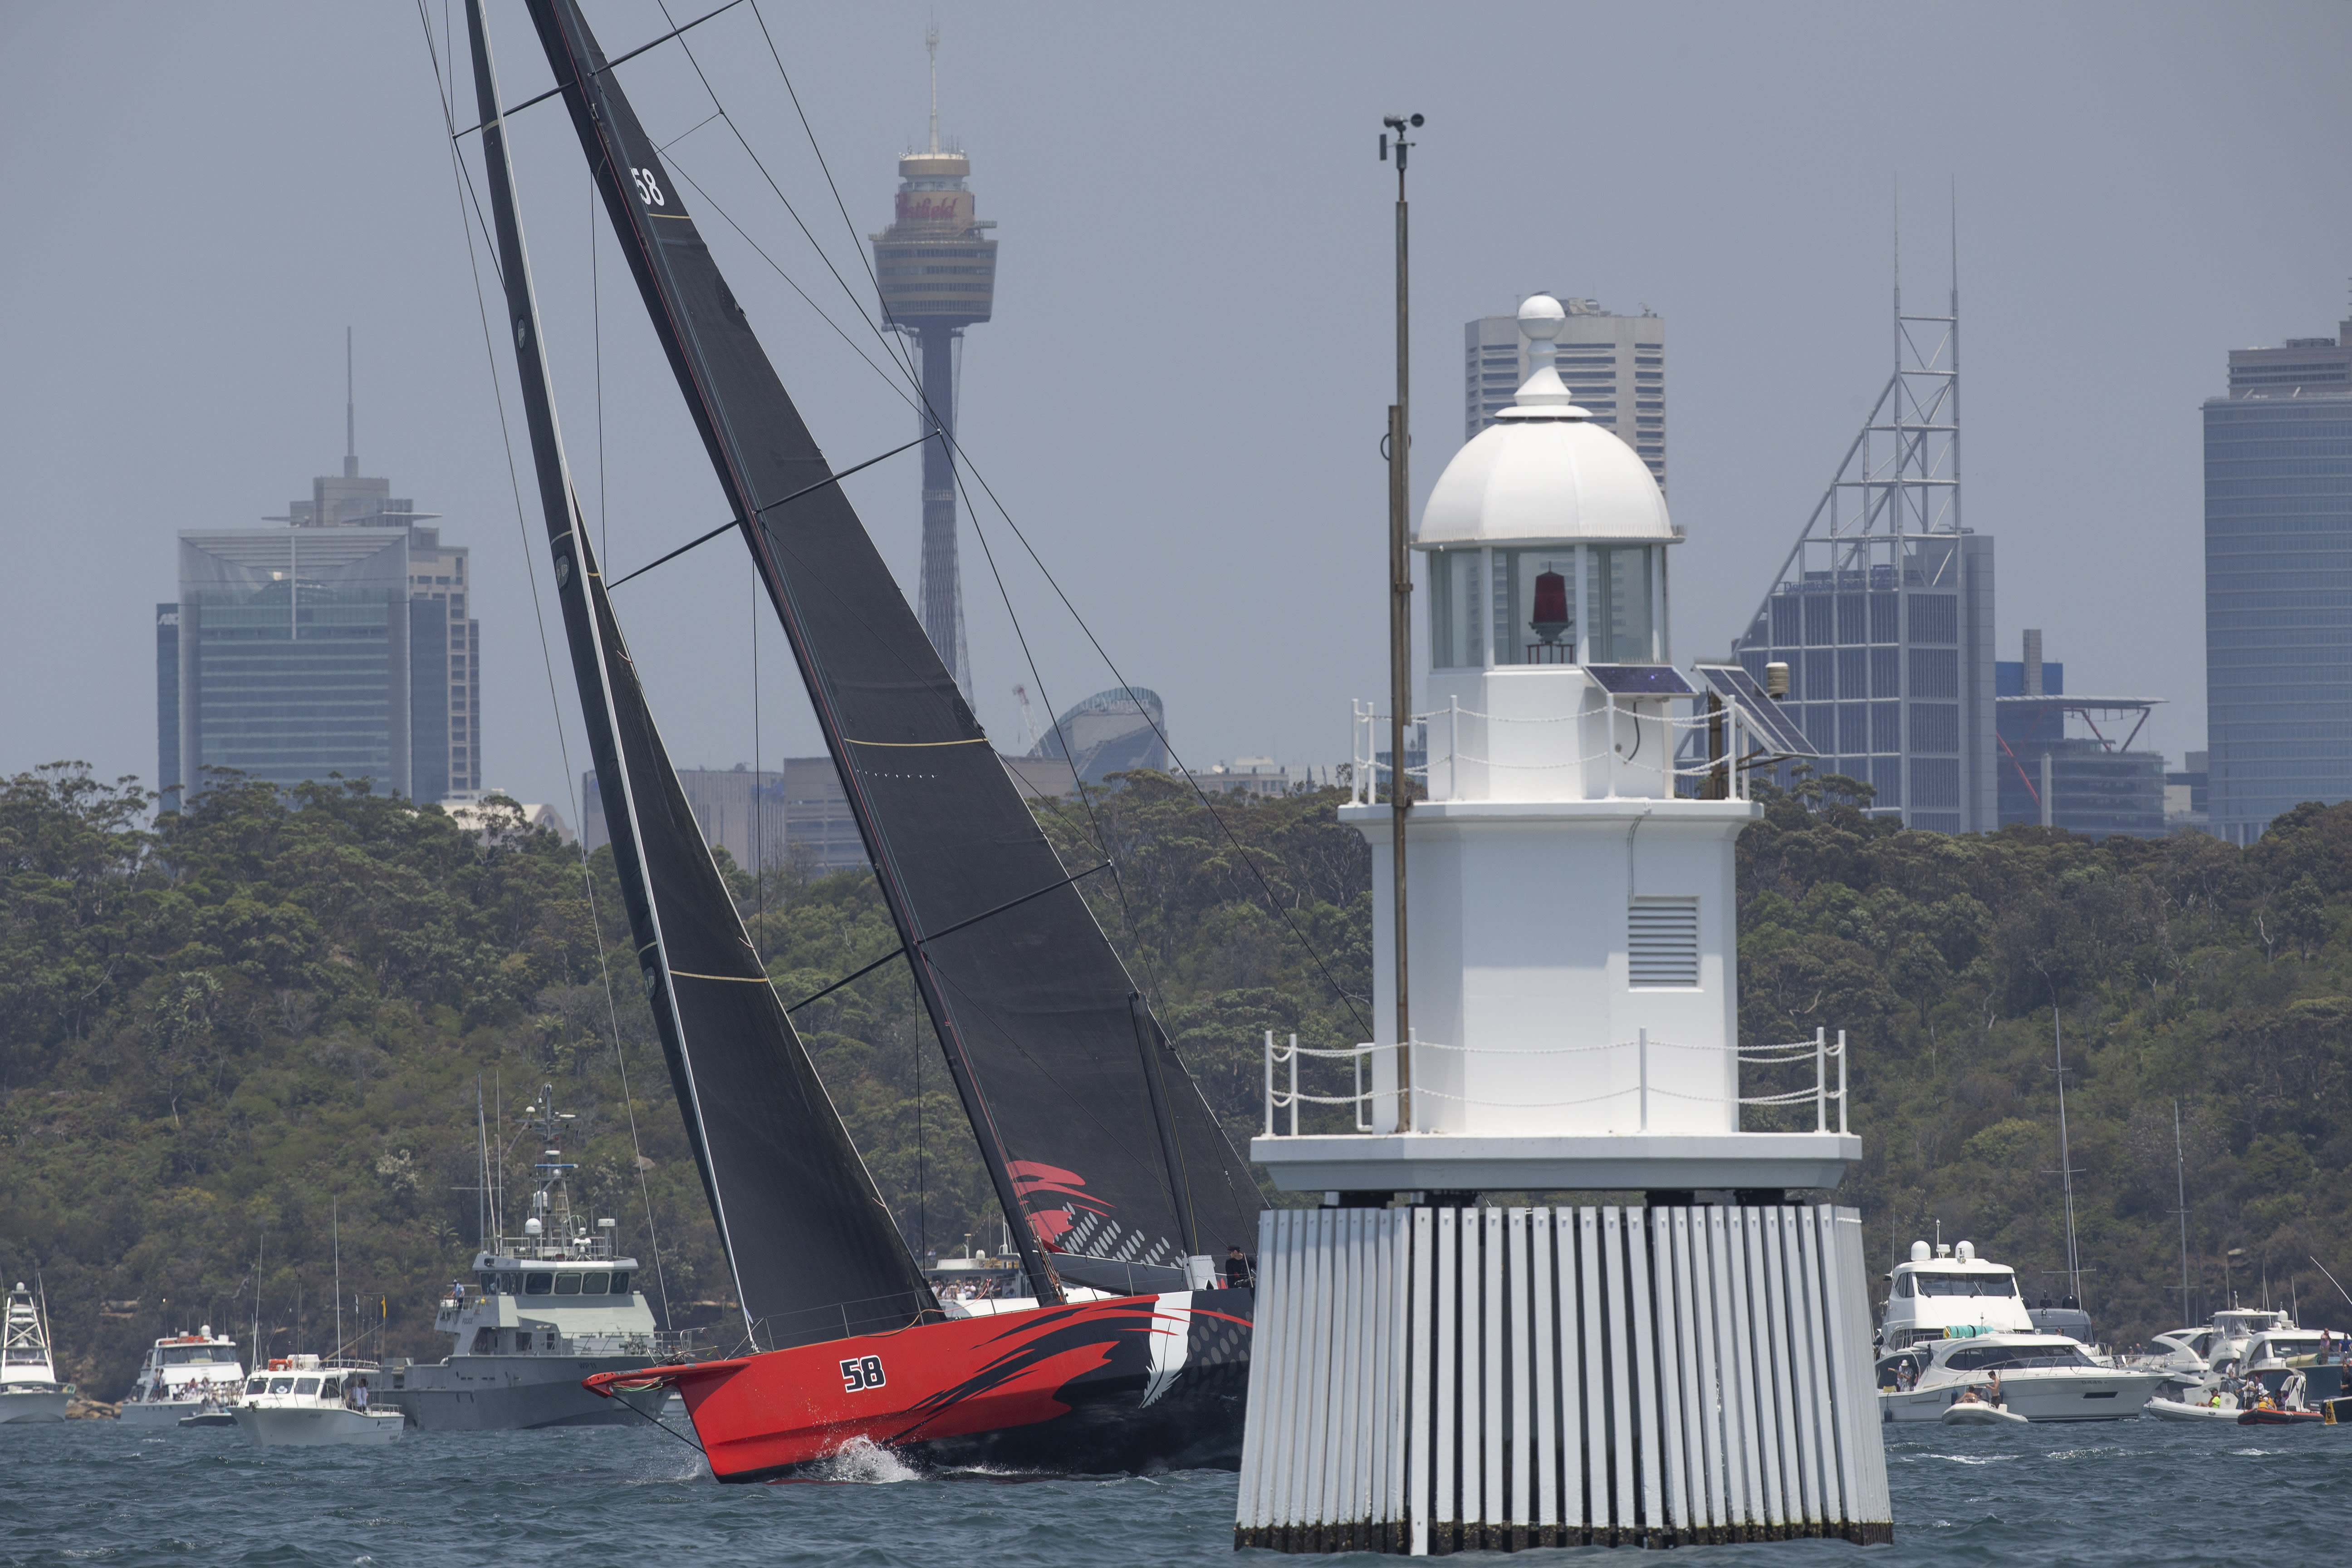 sydney hobart yacht race storm